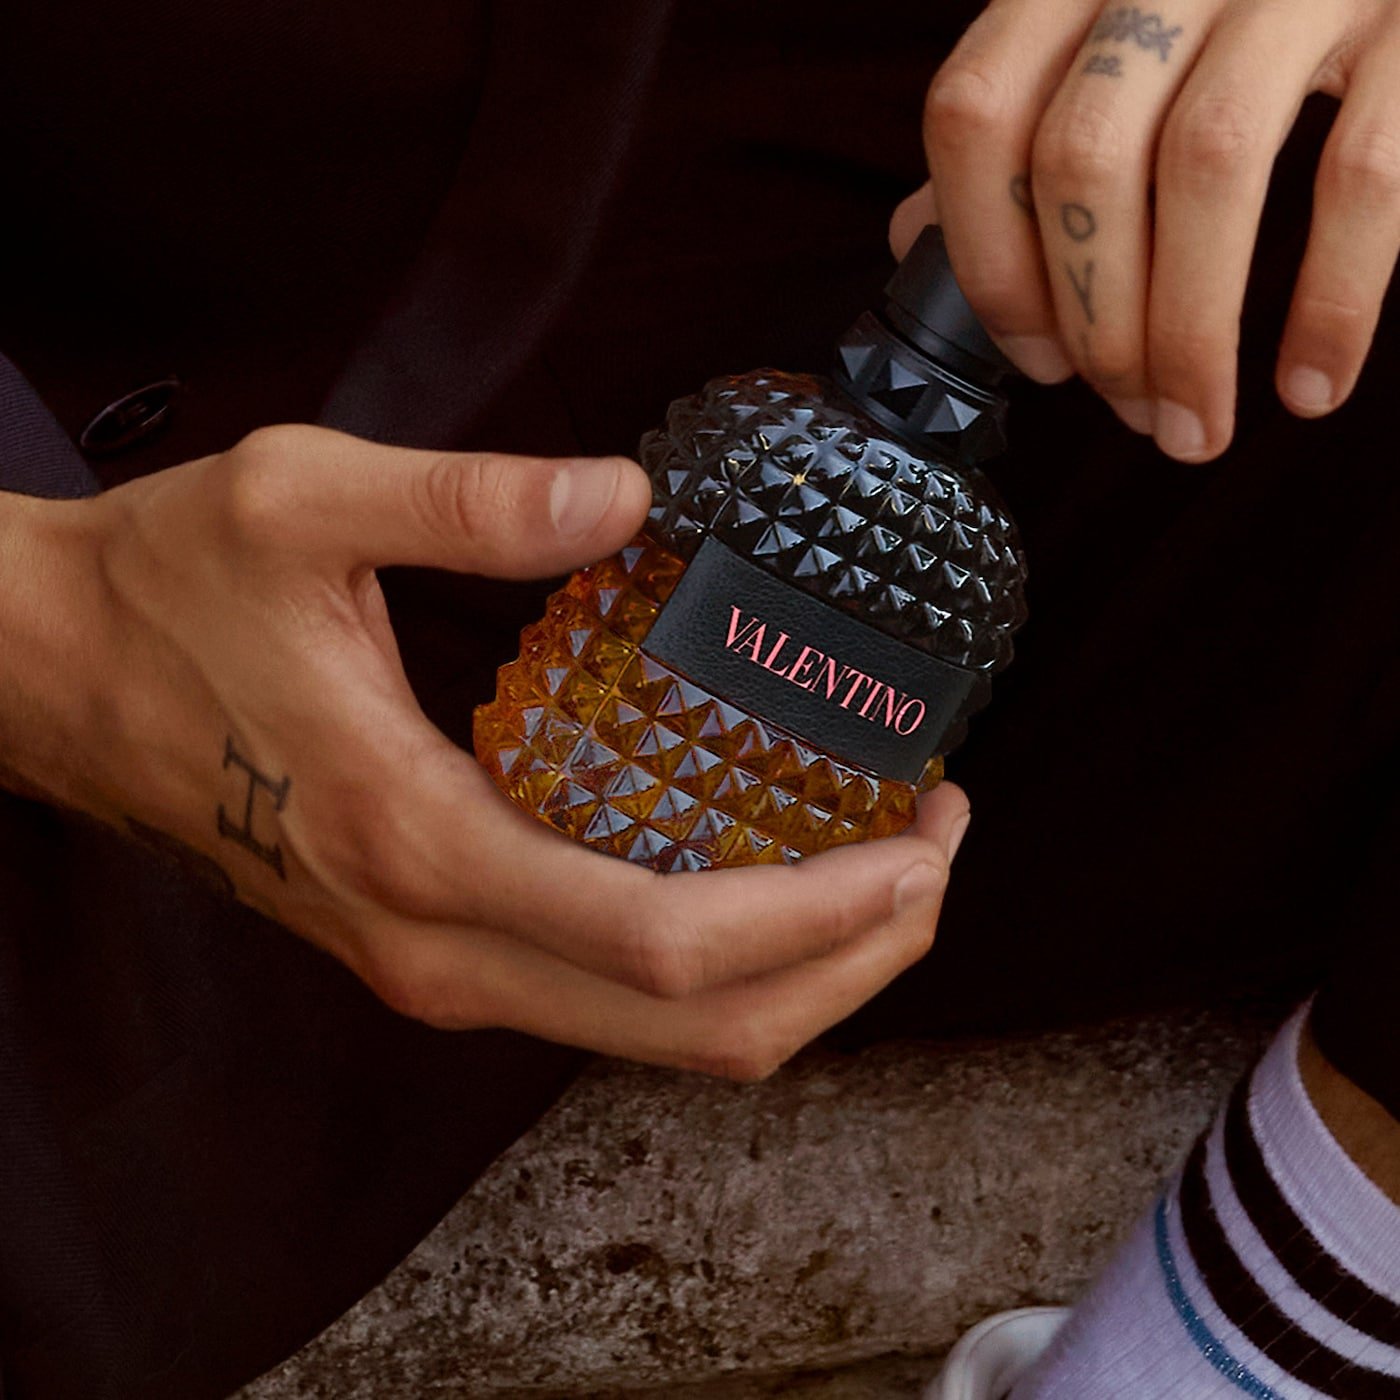 Valentino Uomo Born in Roma Coral Fantasy EDT | My Perfume Shop Australia